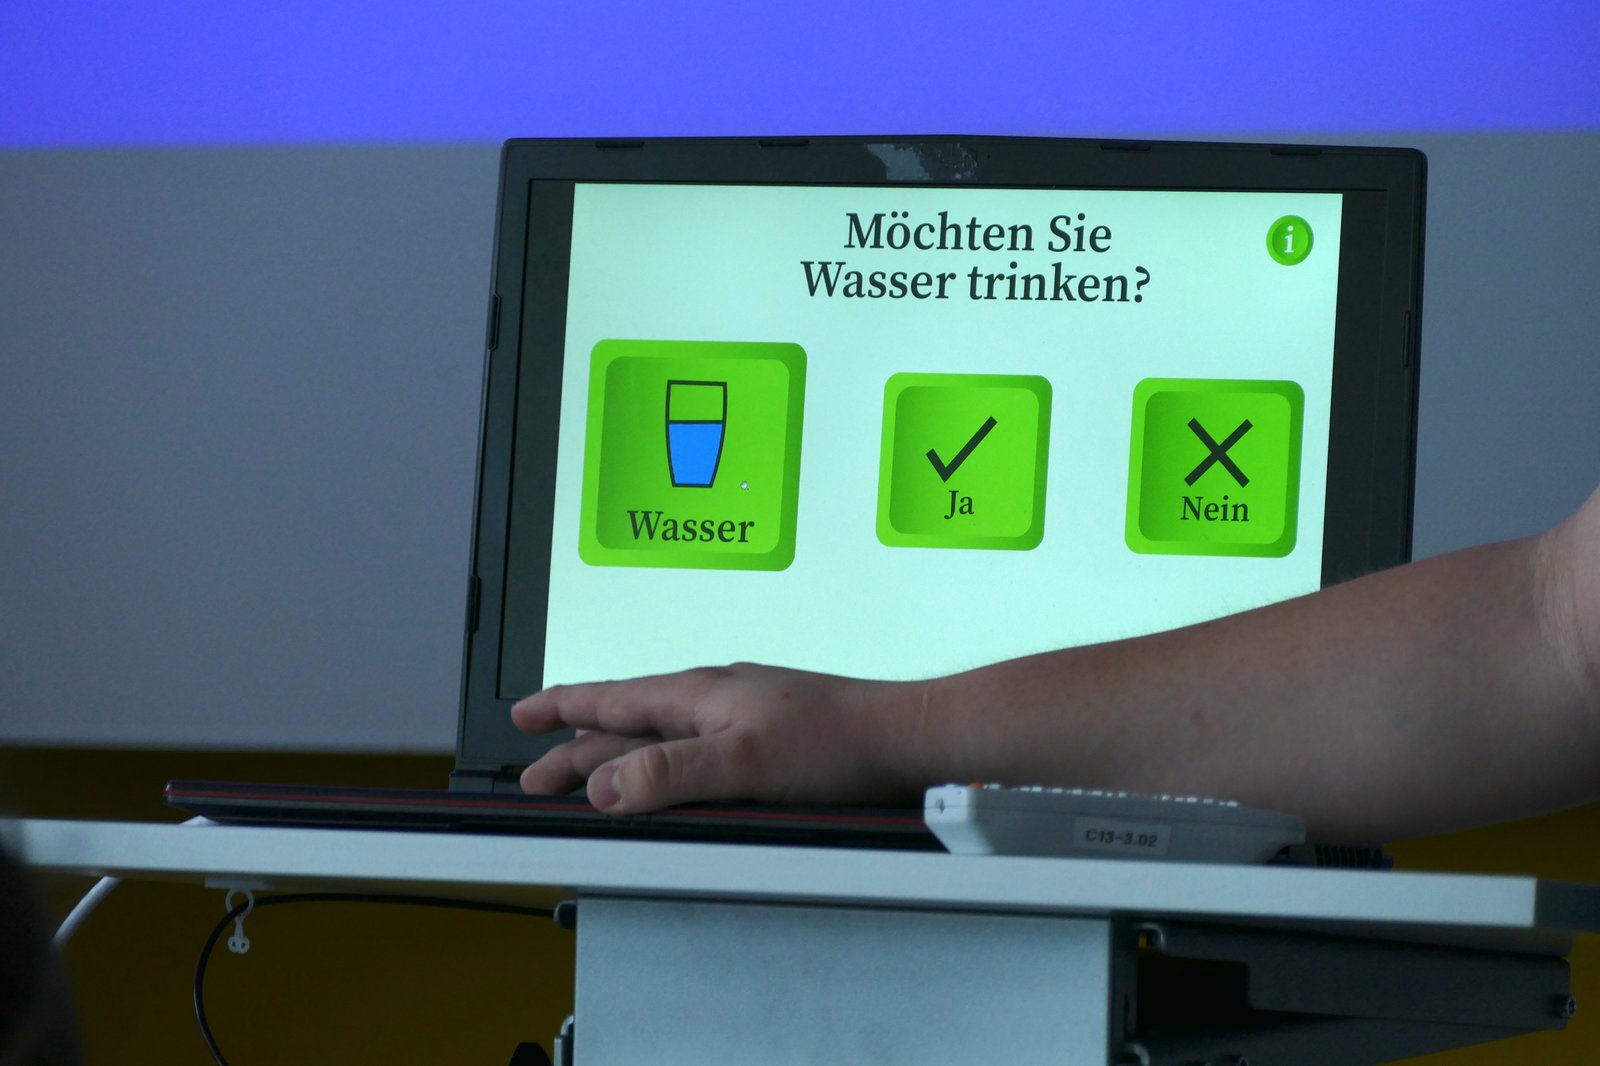 Ein Pult auf dem ein Laptop steht. Der Laptop zeigt eine mögliche Anzeige zur Kommunikation des Service-Roboters.